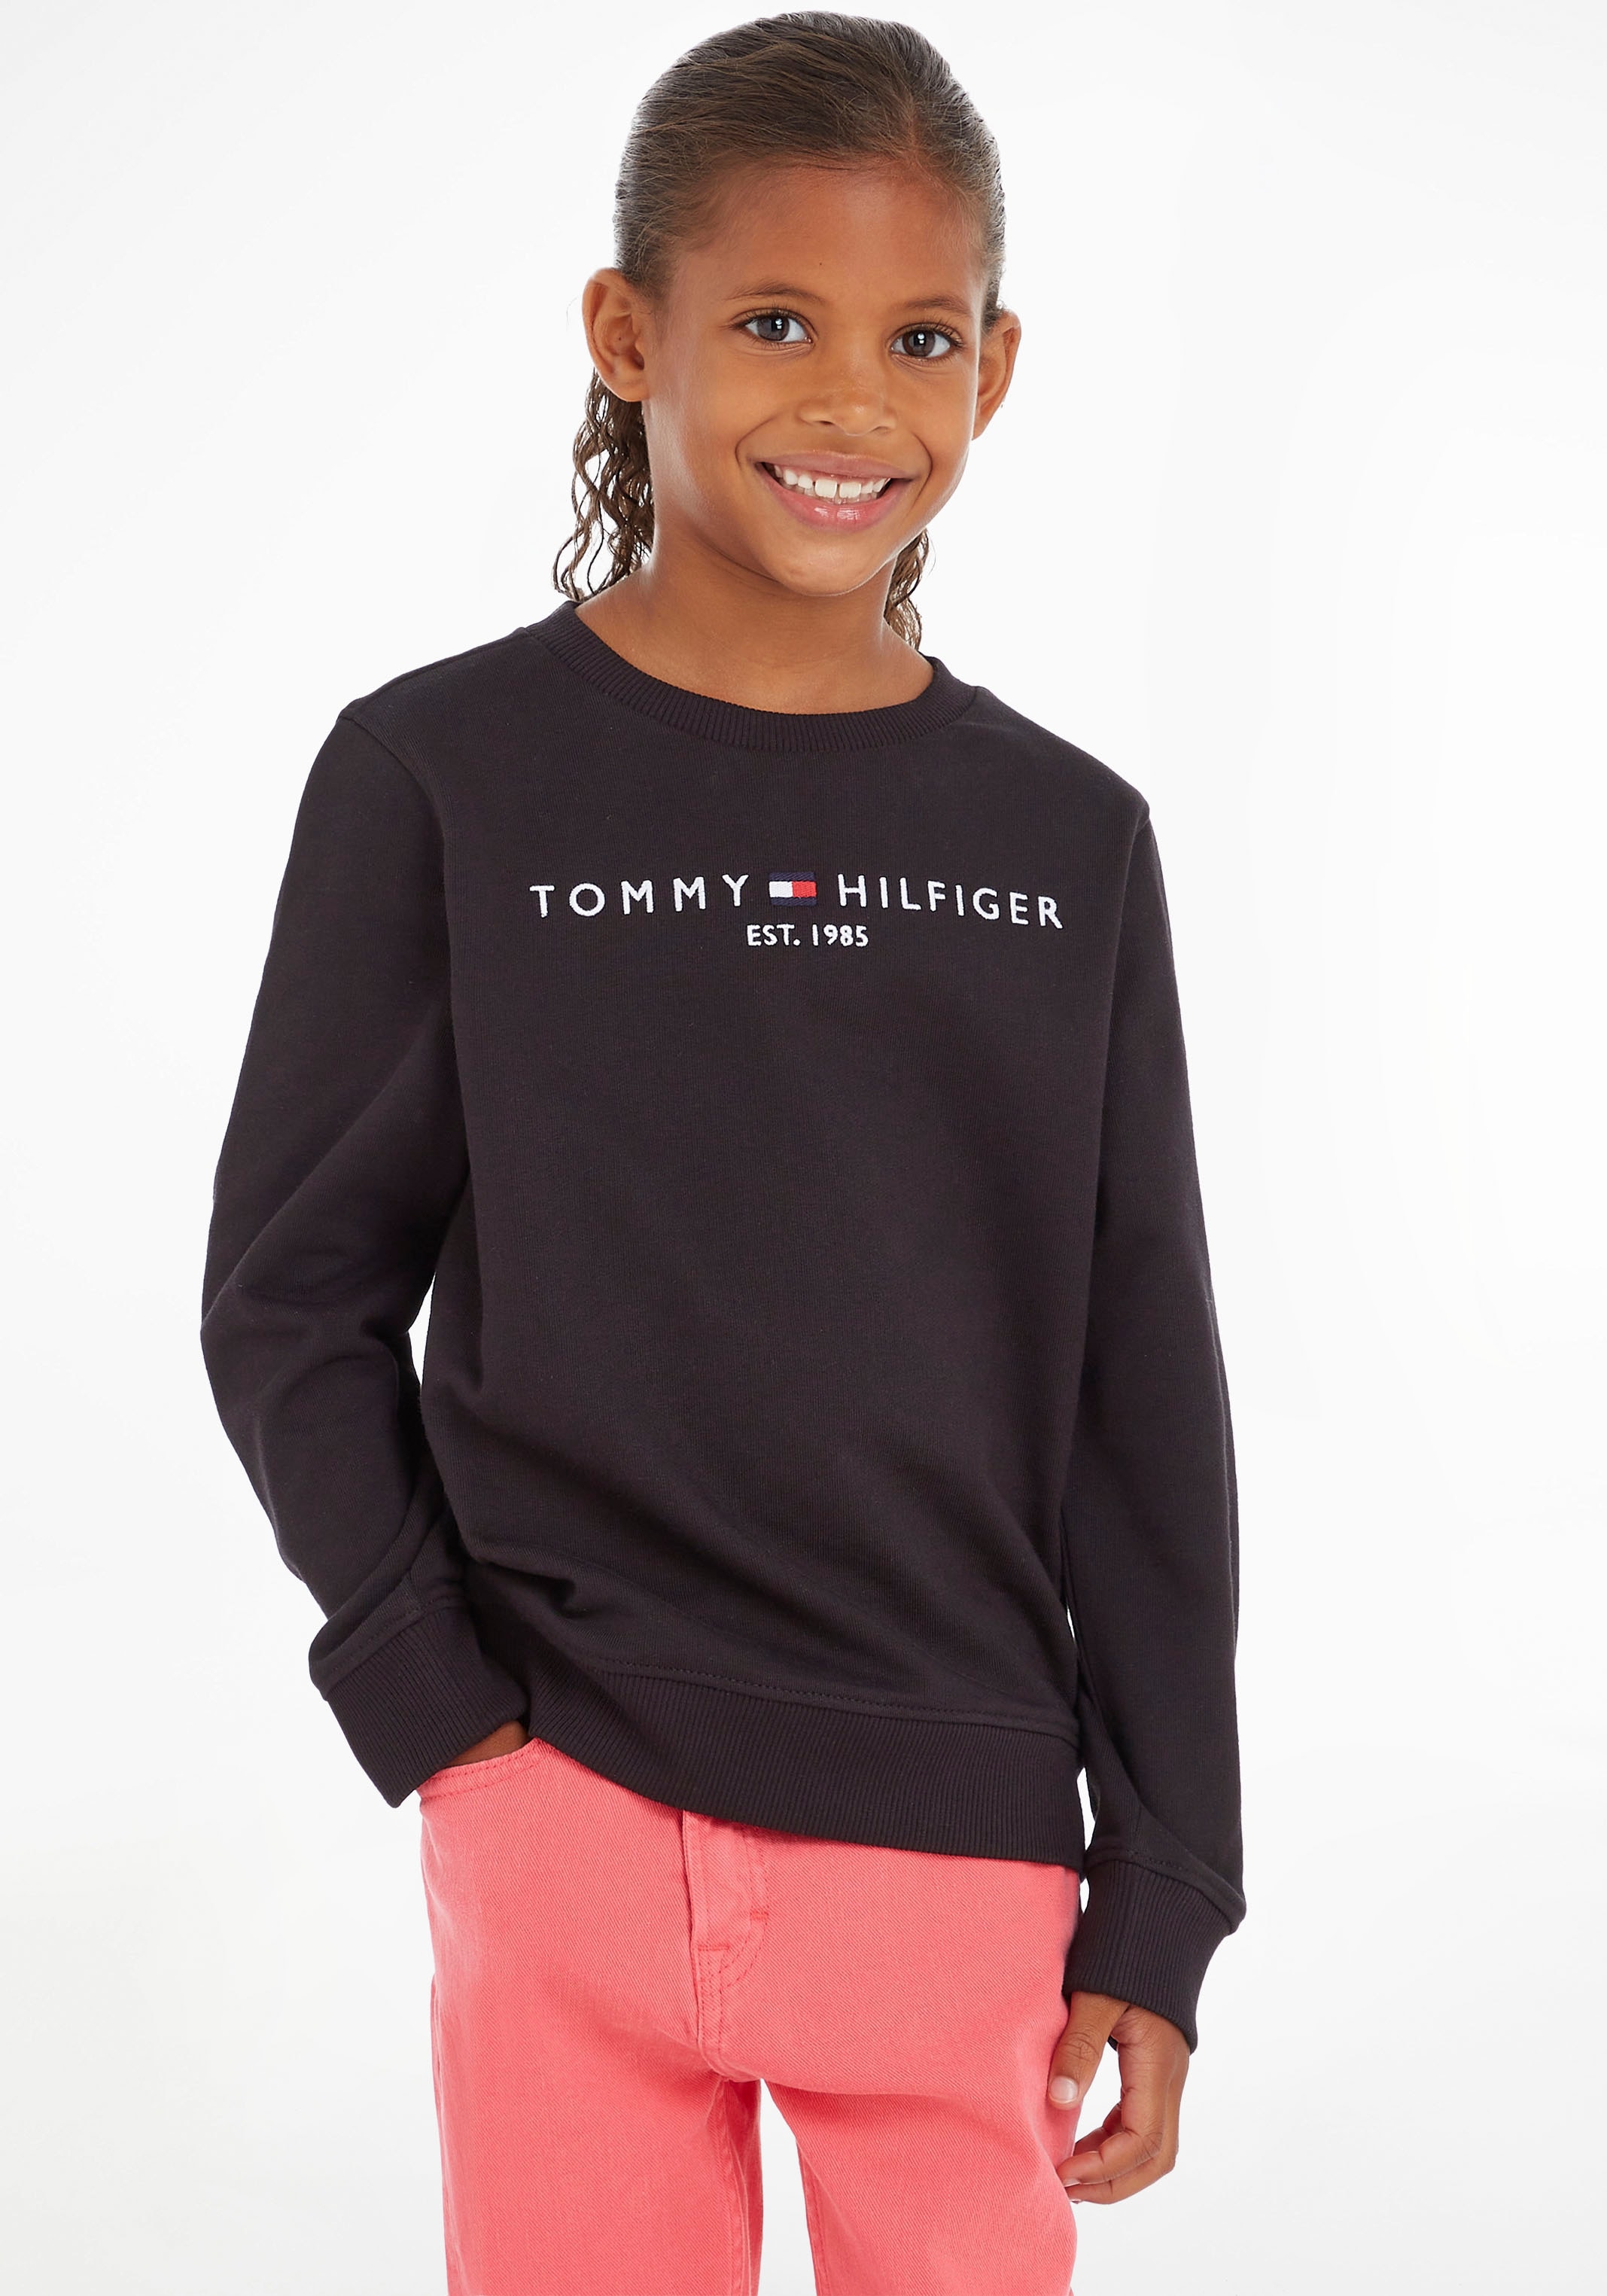 Shop im Tommy OTTO Hilfiger Online Sweatshirt